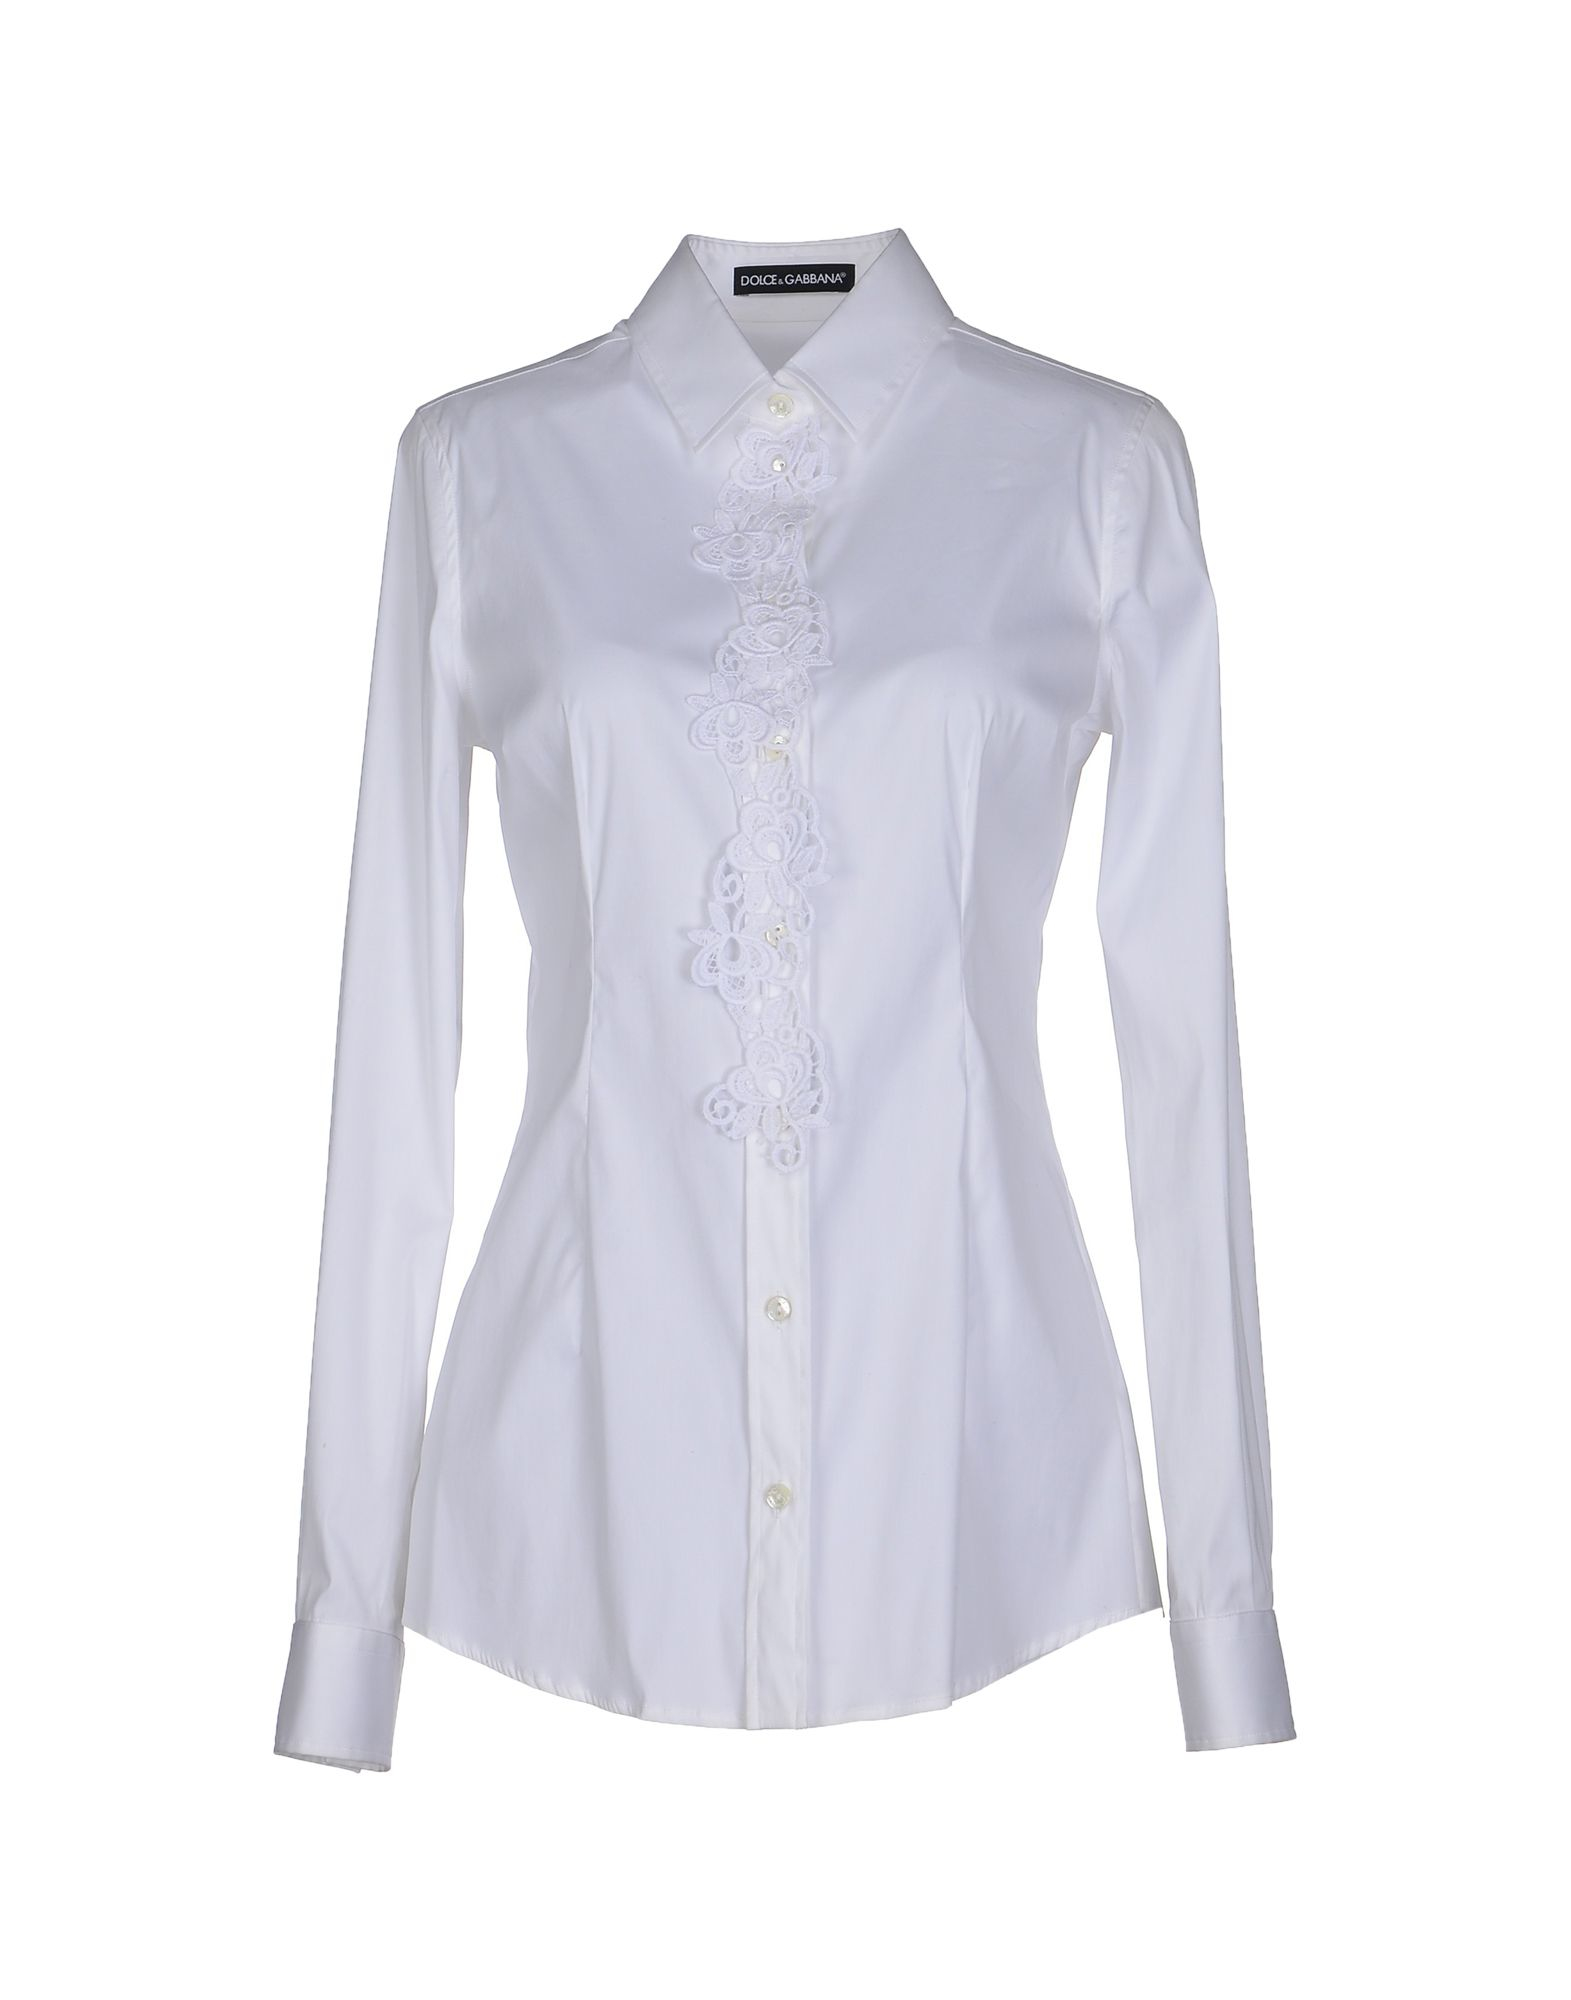 Lyst - Dolce & Gabbana Shirt in White